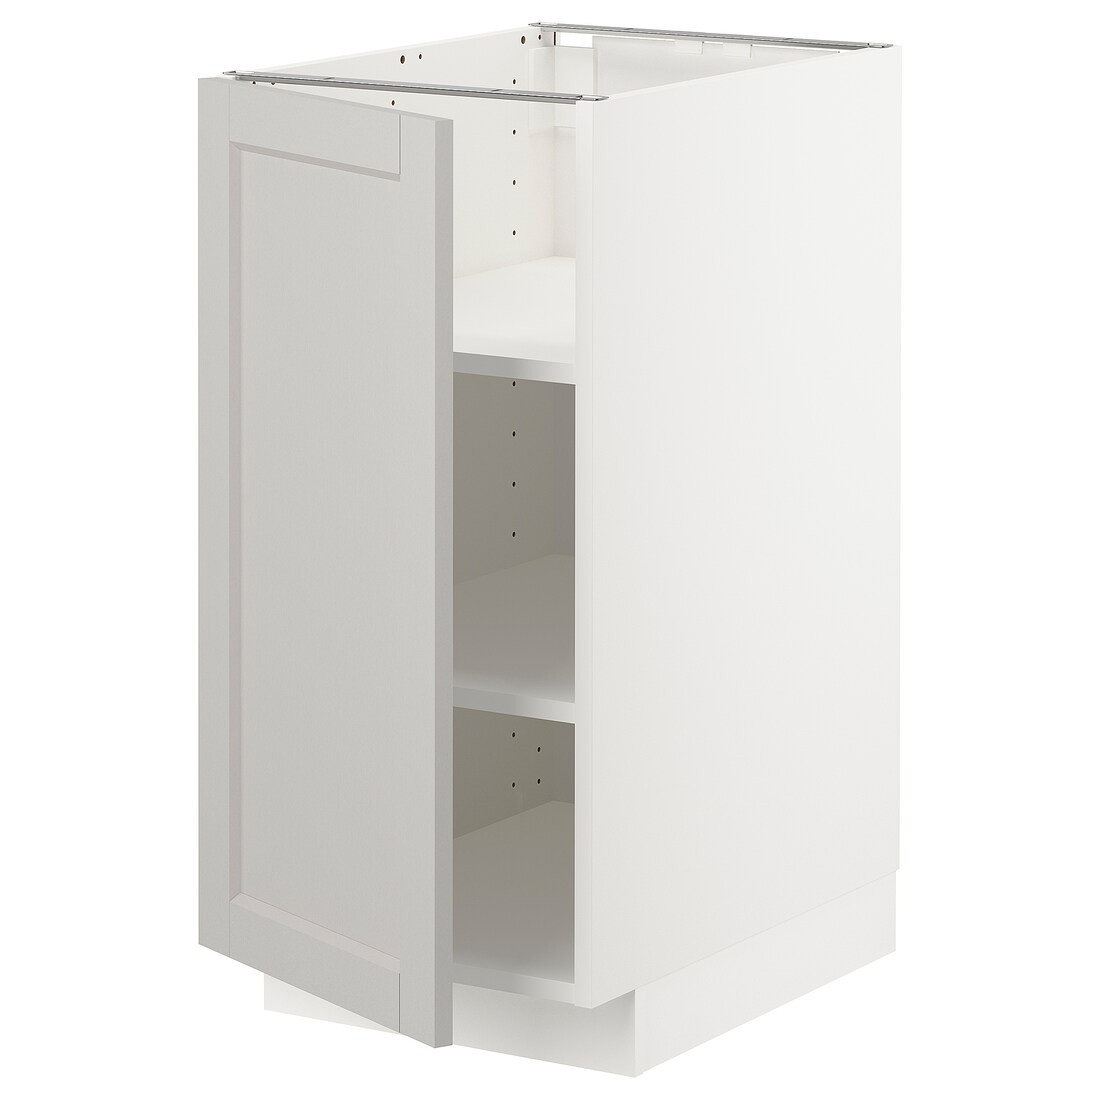 IKEA METOD МЕТОД Напольный шкаф с полками, белый / Lerhyttan светло-серый, 40x60 см 19468314 194.683.14